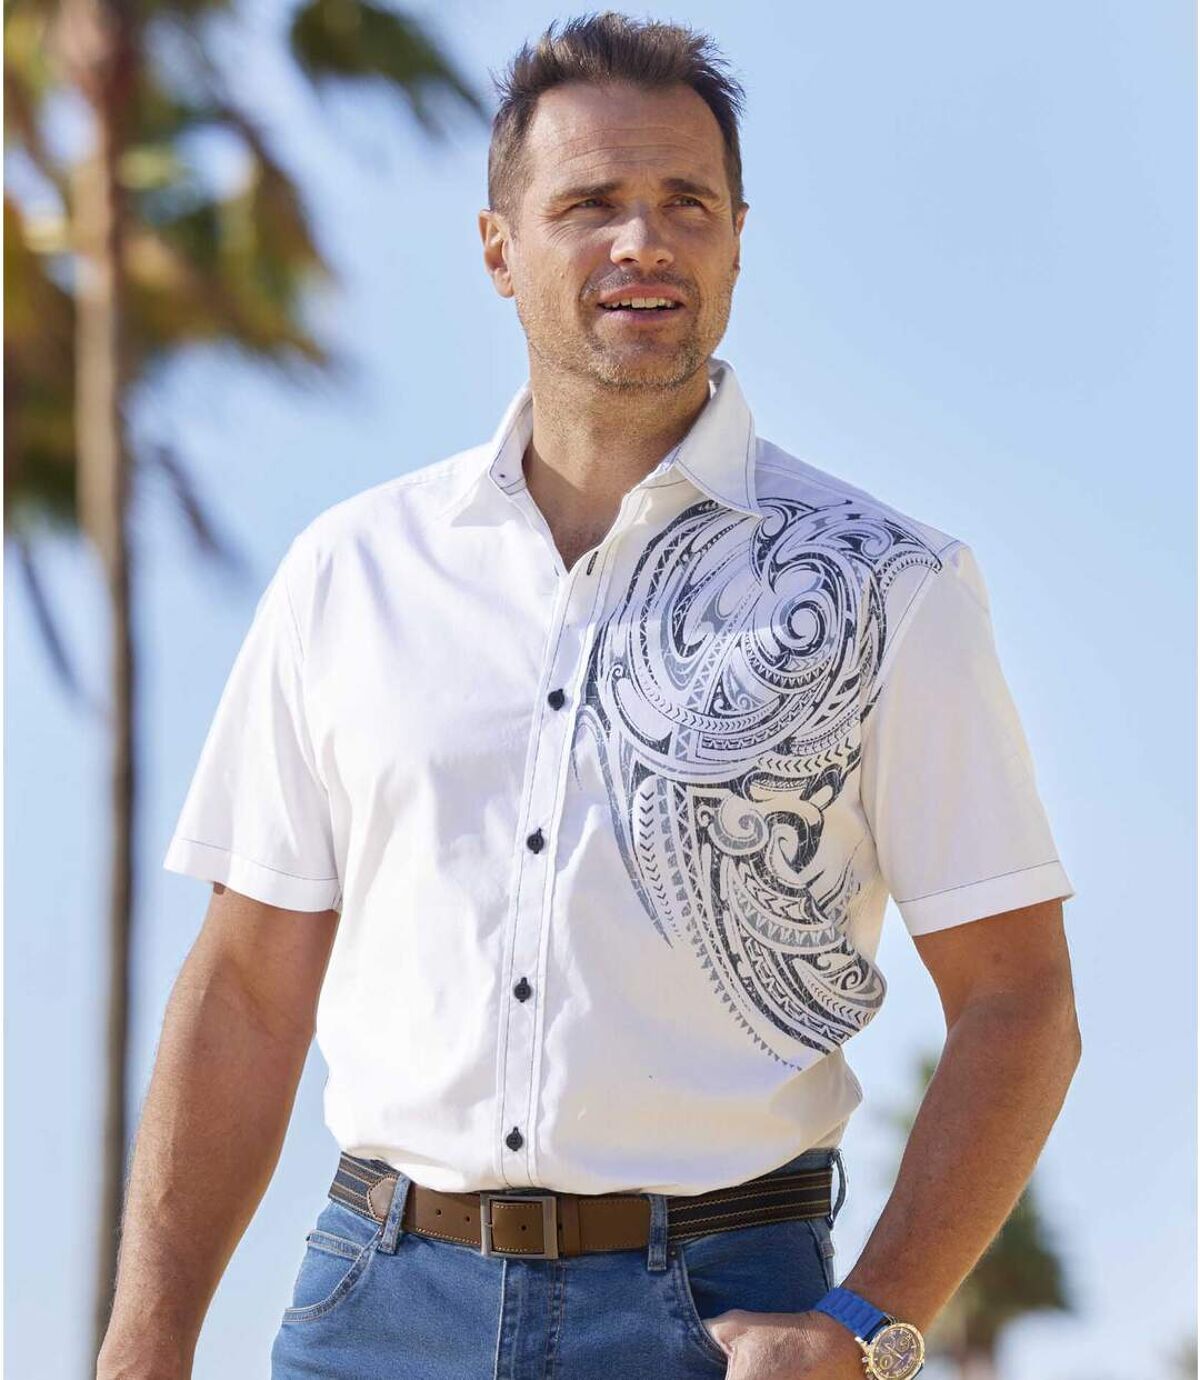 Рубашка из Поплина с Полинезийским Принтом Atlas For Men